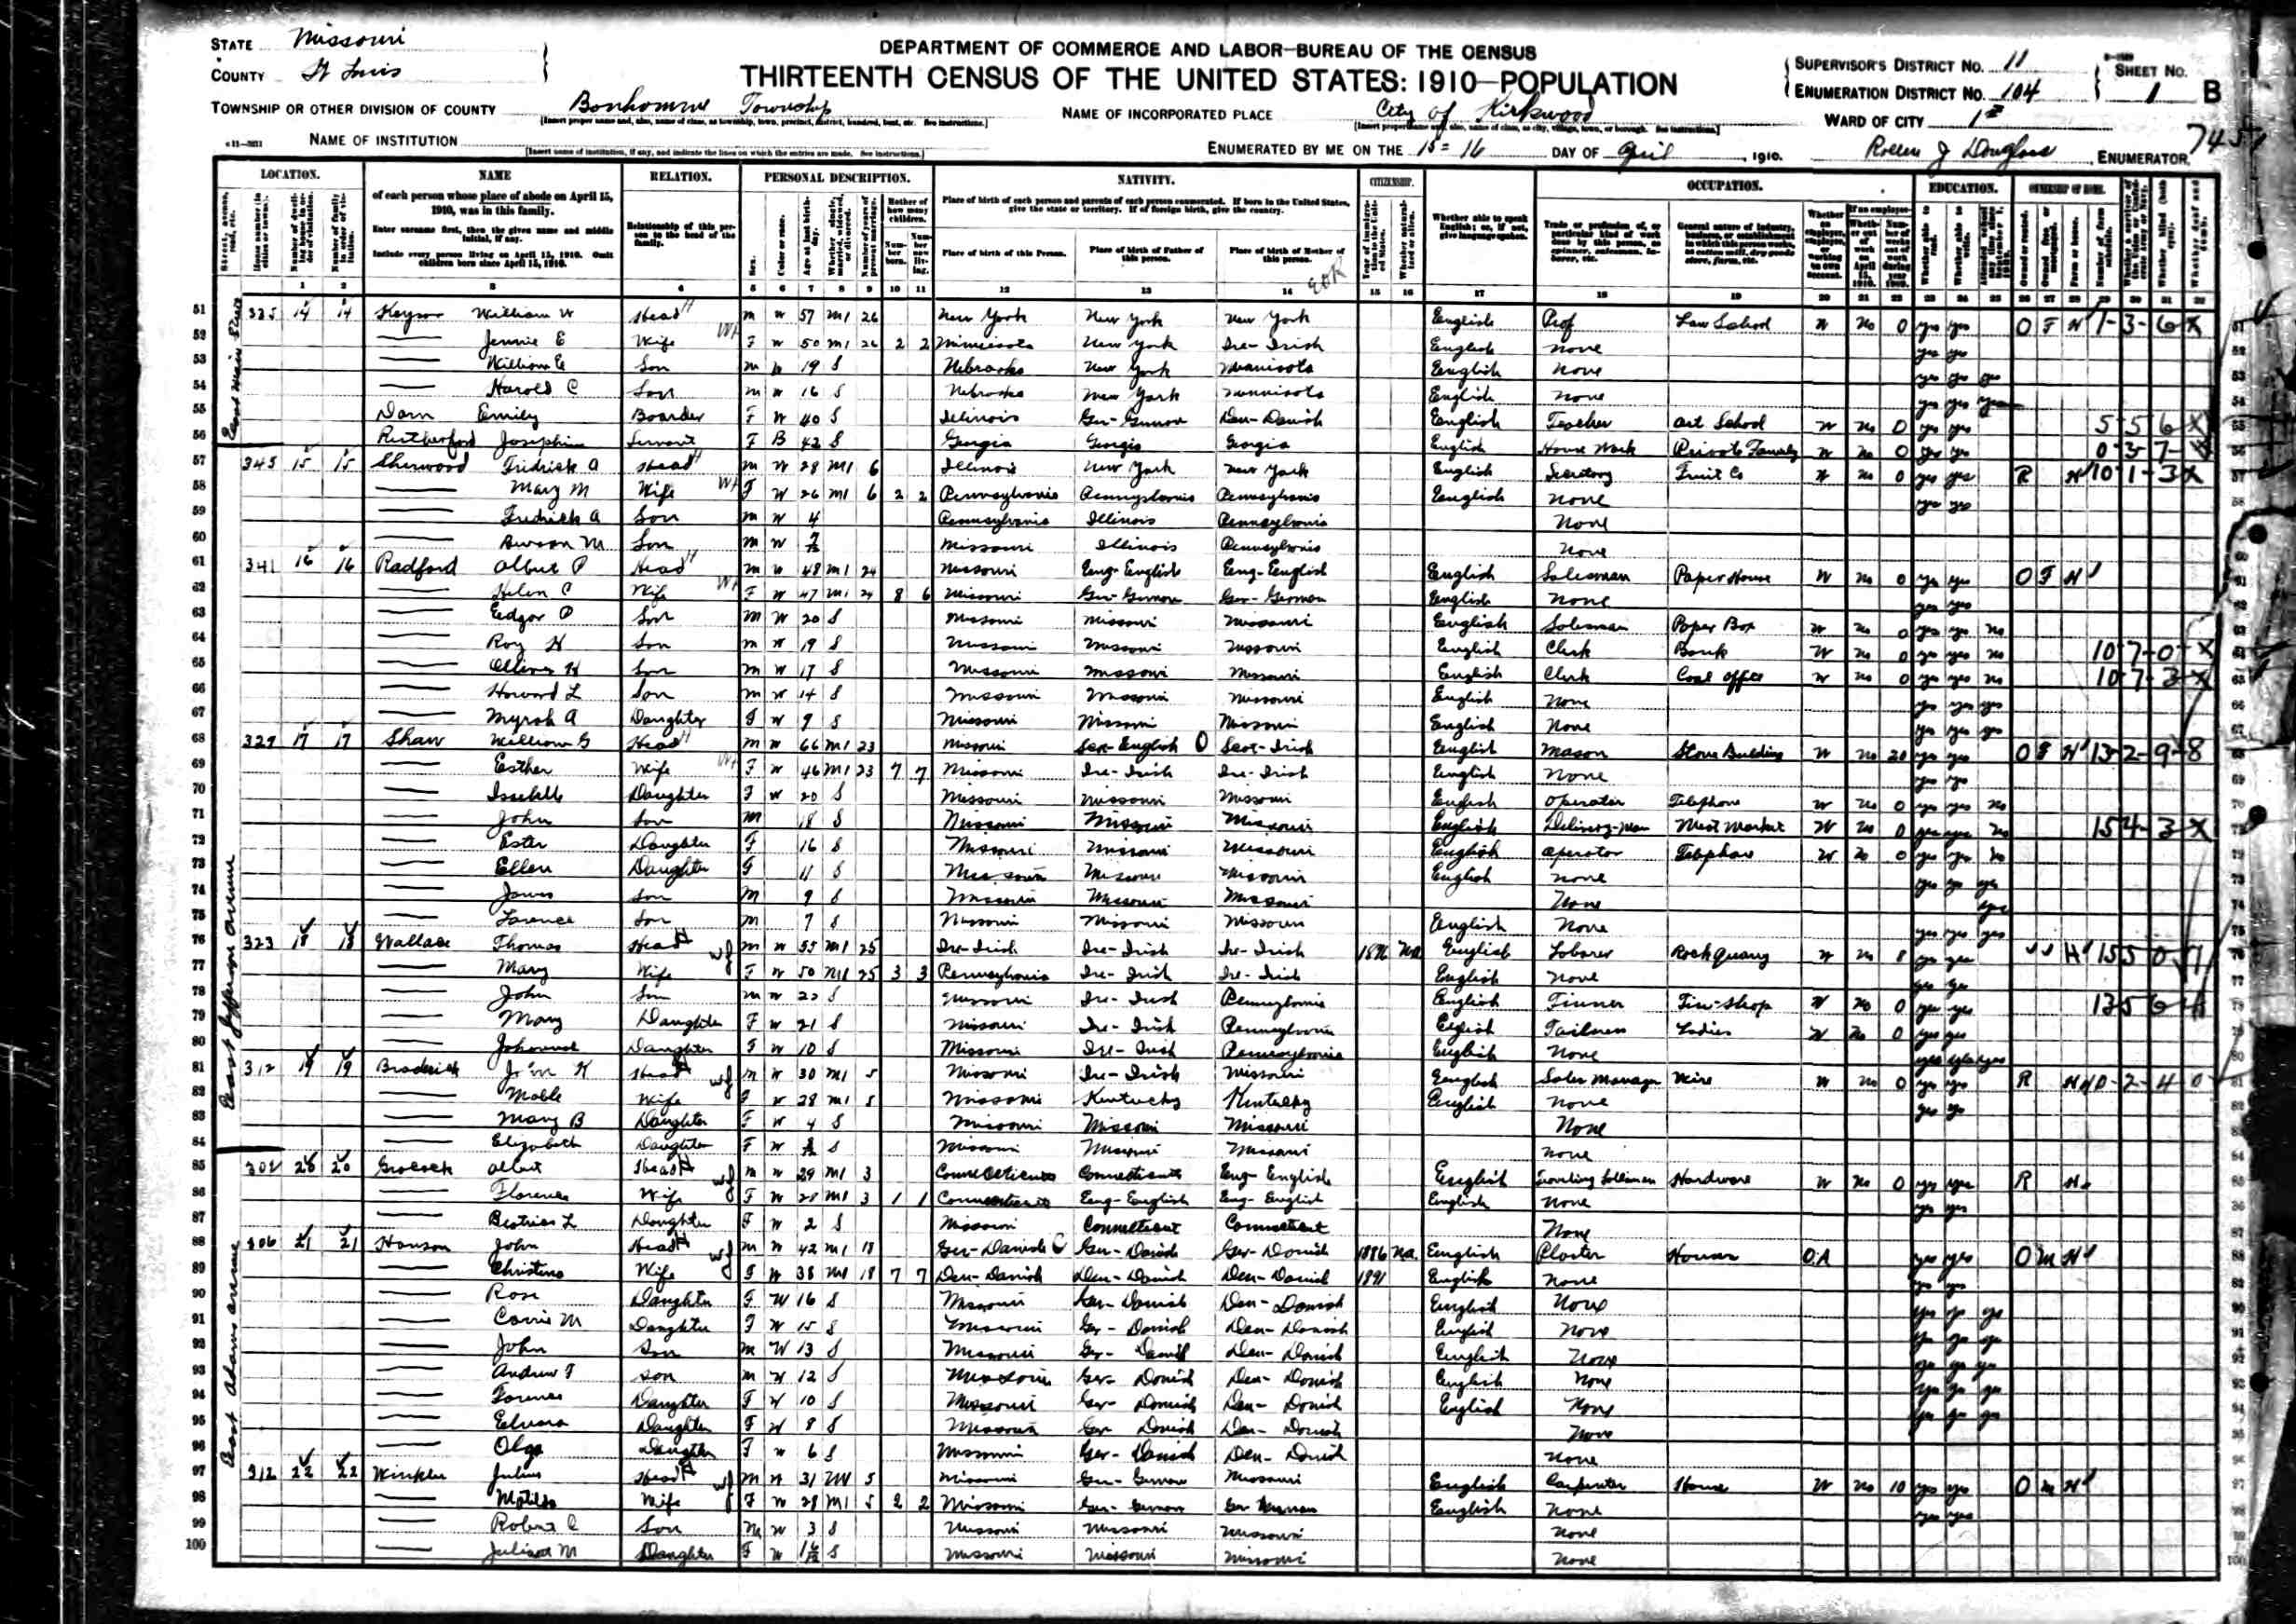 1910 john kern broderick census